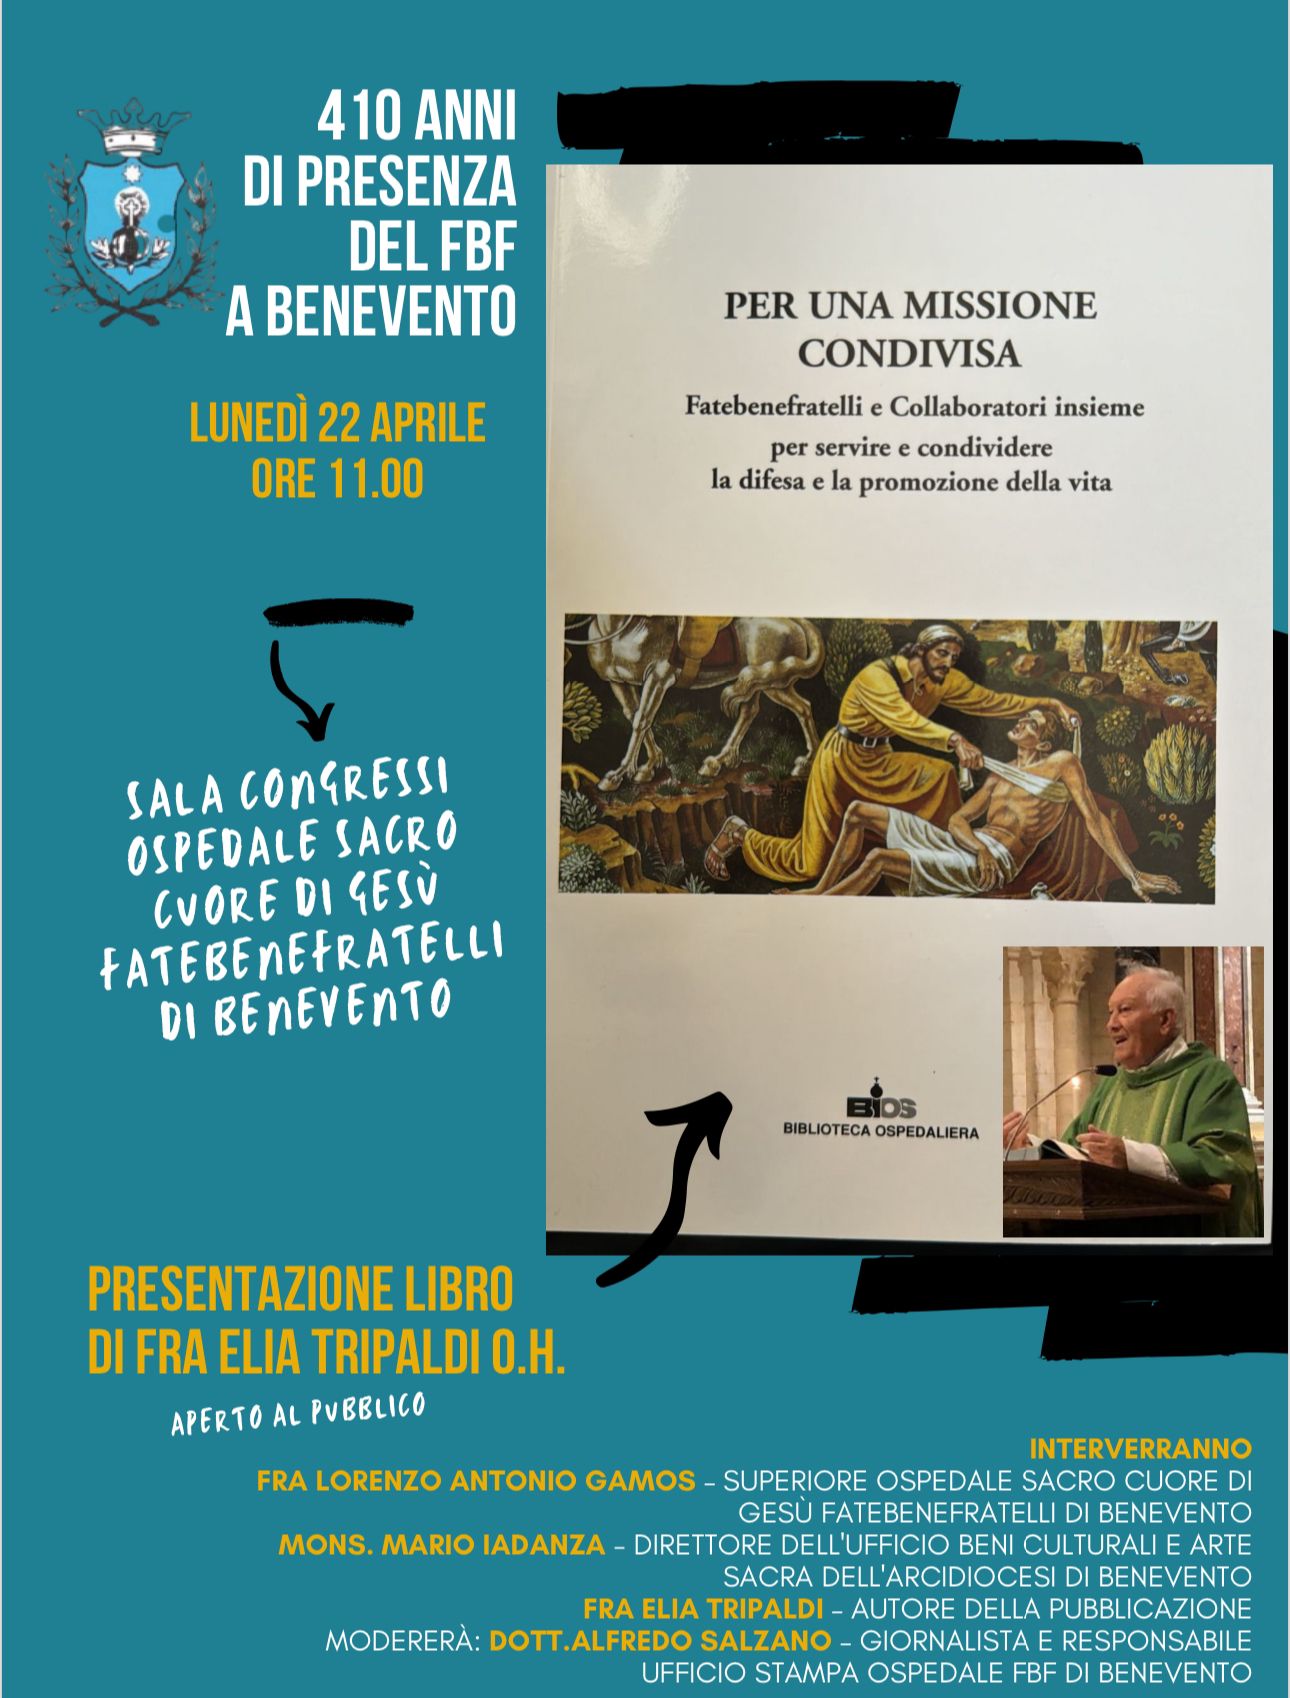 Il 22 Aprile presentazione del libro di Fra Elia Tripaldi o.h. “Per una missione condivisa”